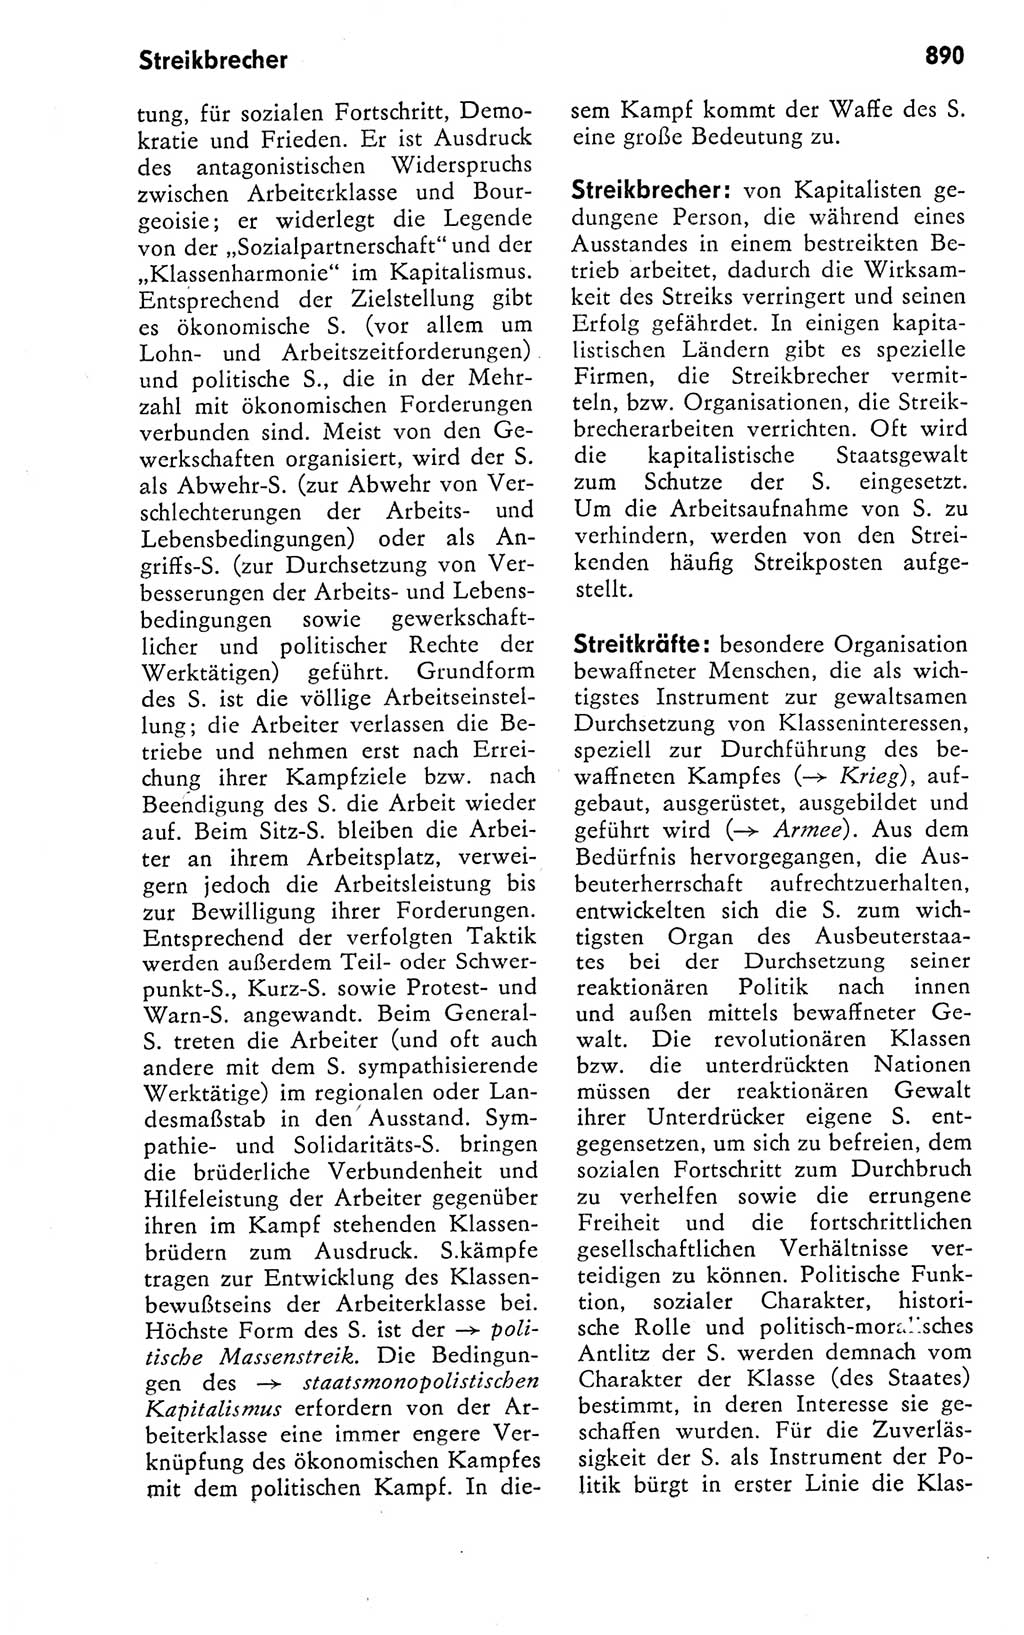 Kleines politisches Wörterbuch [Deutsche Demokratische Republik (DDR)] 1978, Seite 890 (Kl. pol. Wb. DDR 1978, S. 890)